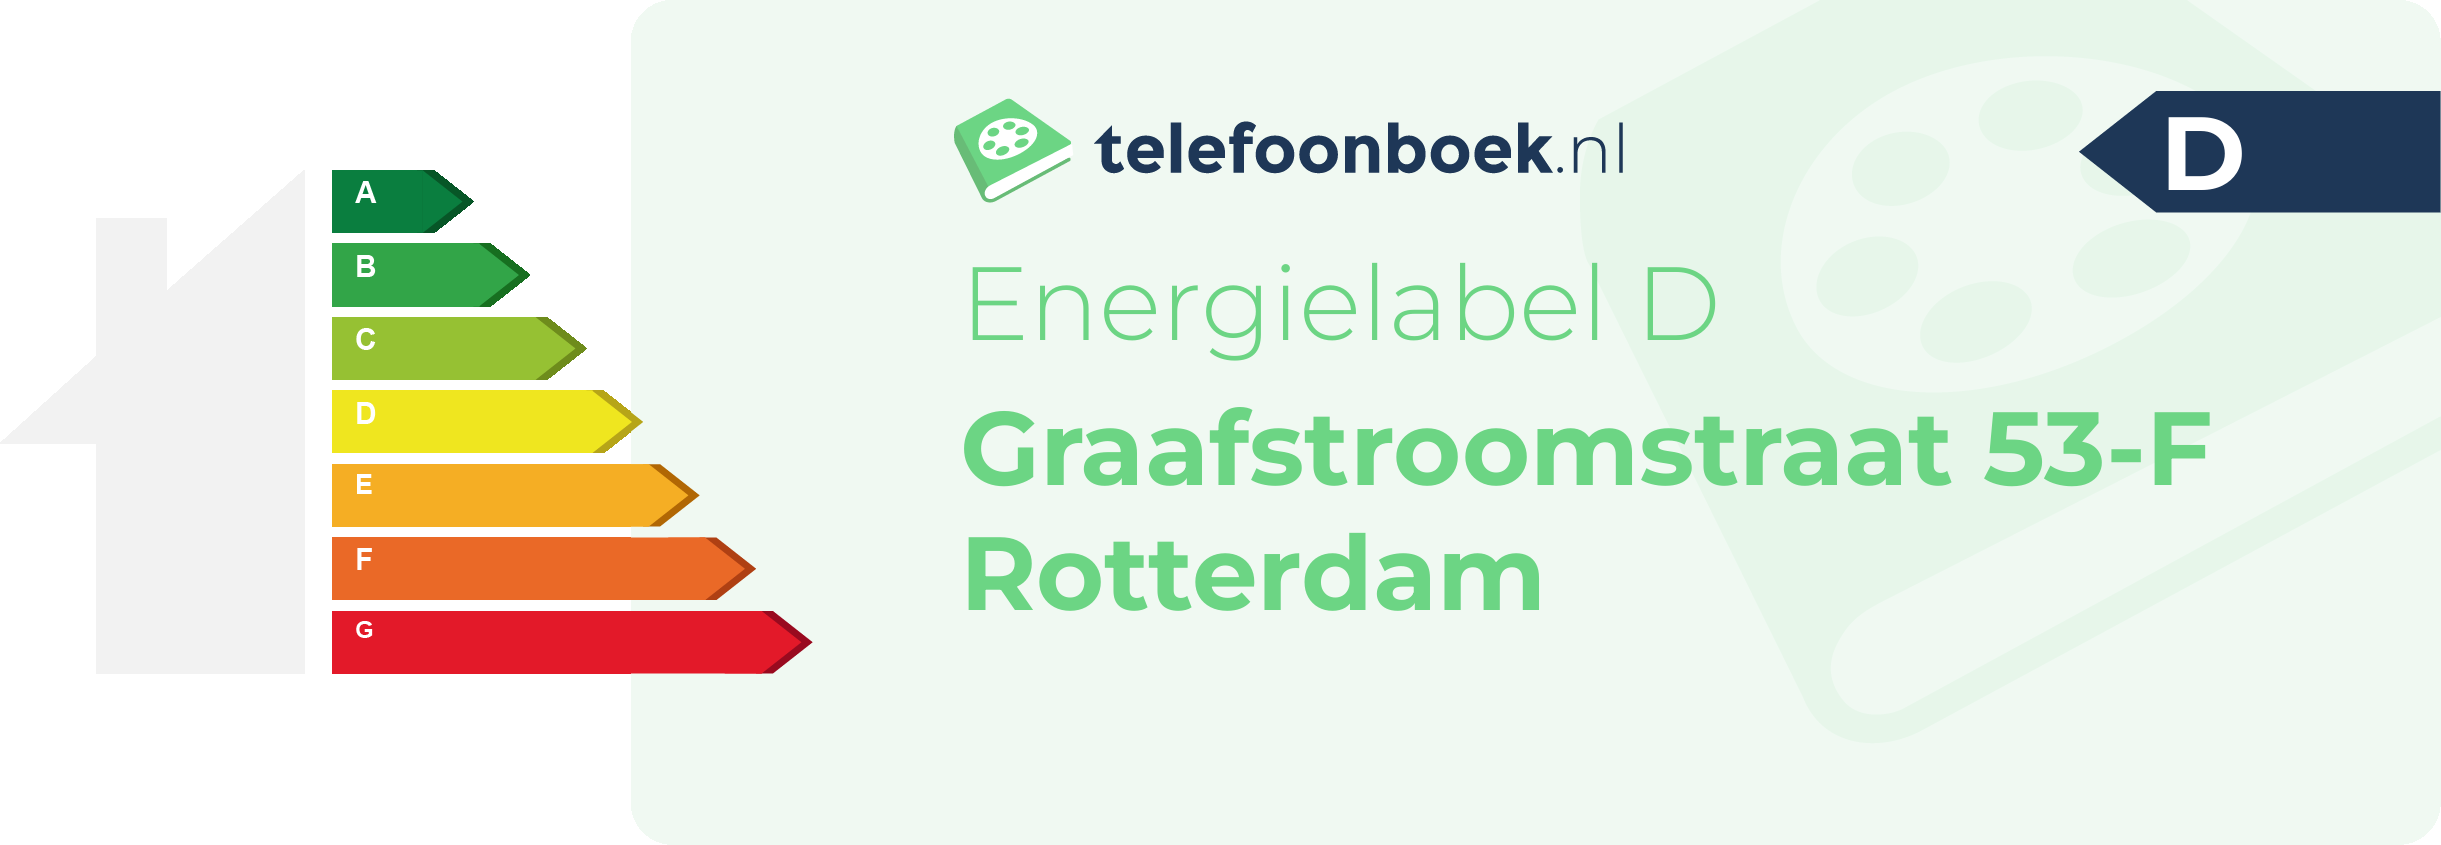 Energielabel Graafstroomstraat 53-F Rotterdam